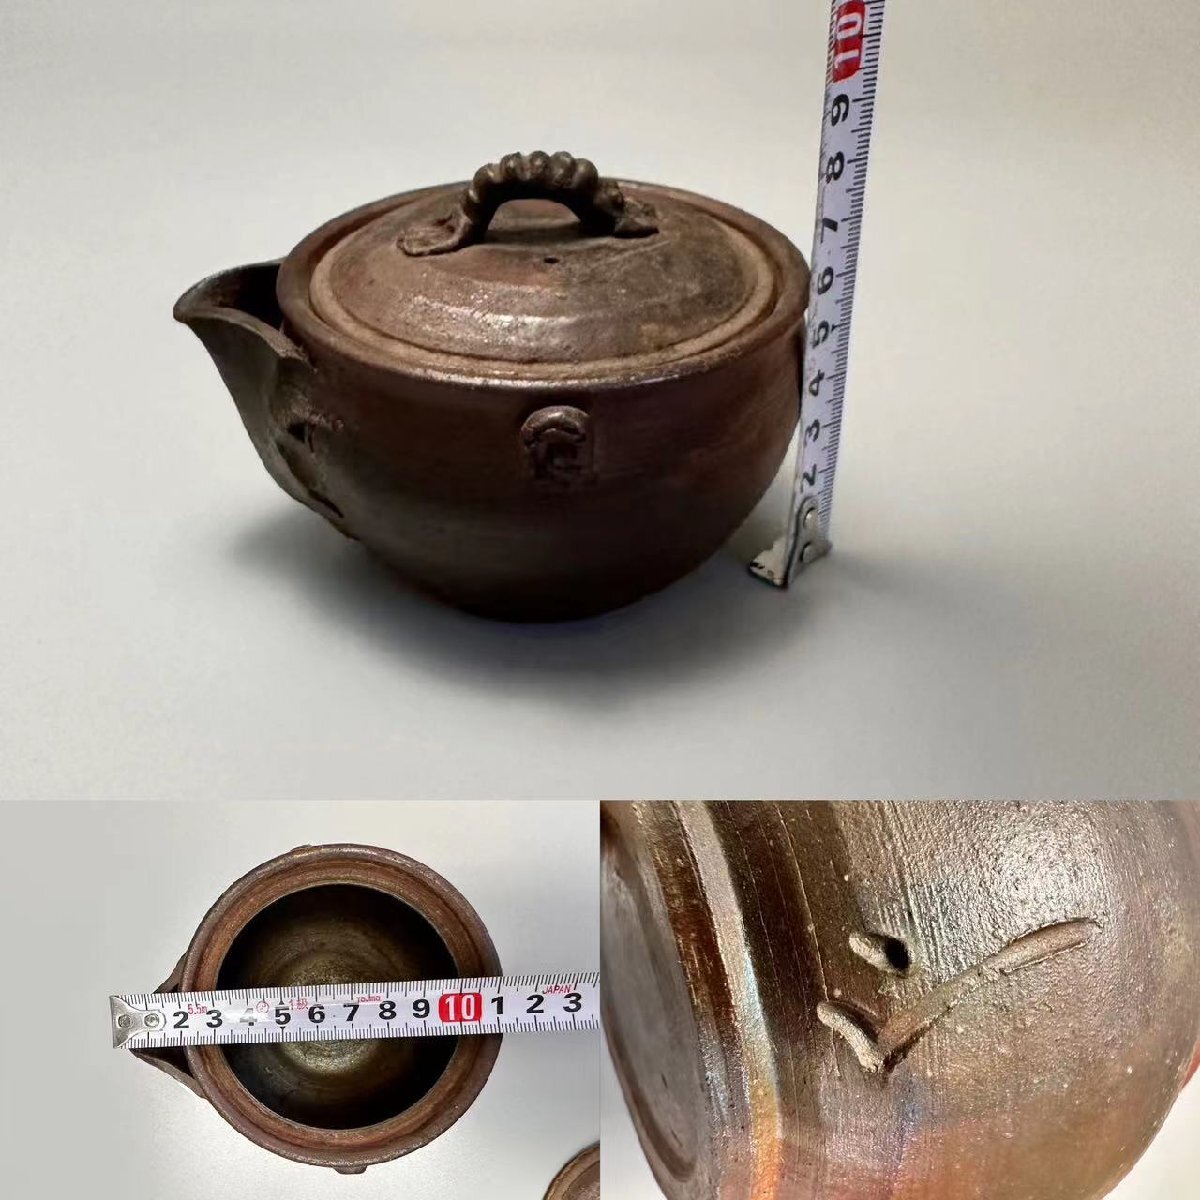 B042A5 Bizen . bin Yamamoto . preeminence work kiln change tea utensils . tea utensils tea note . bin foam bin earthenware teapot tea utensils 